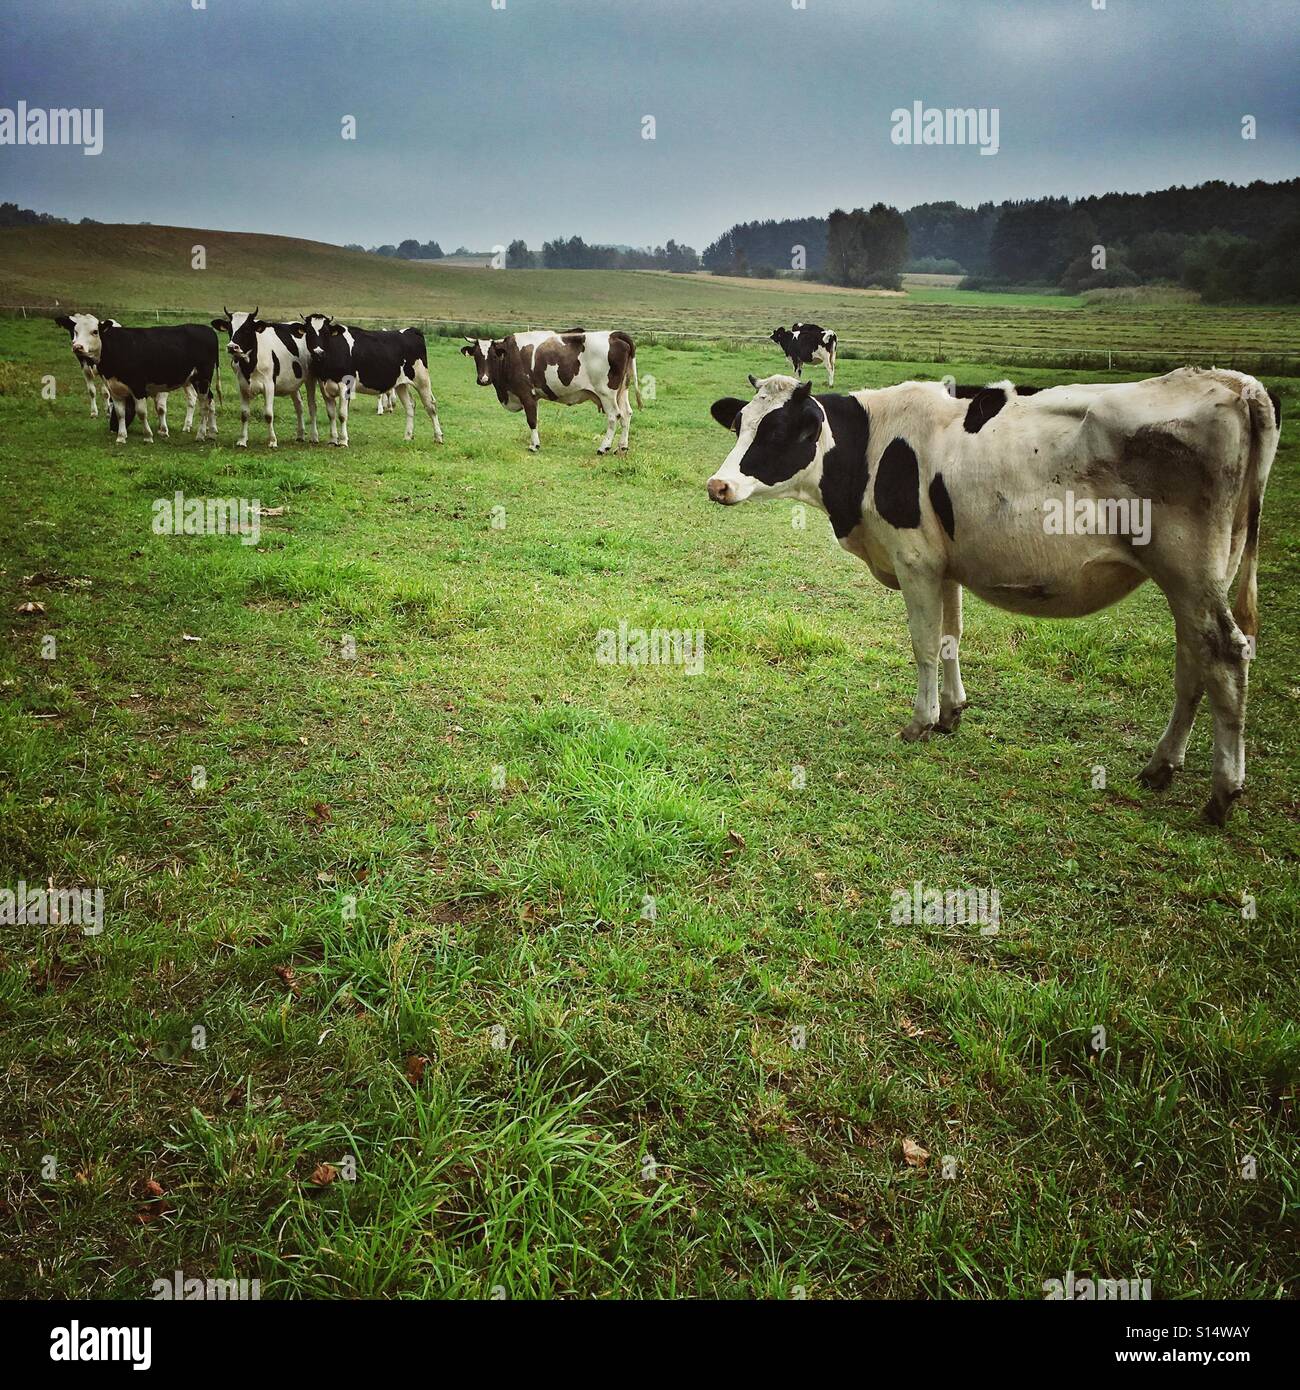 Cows on a pasturage near Brusy town, Pomeranian Voivodeship, Poland Stock Photo